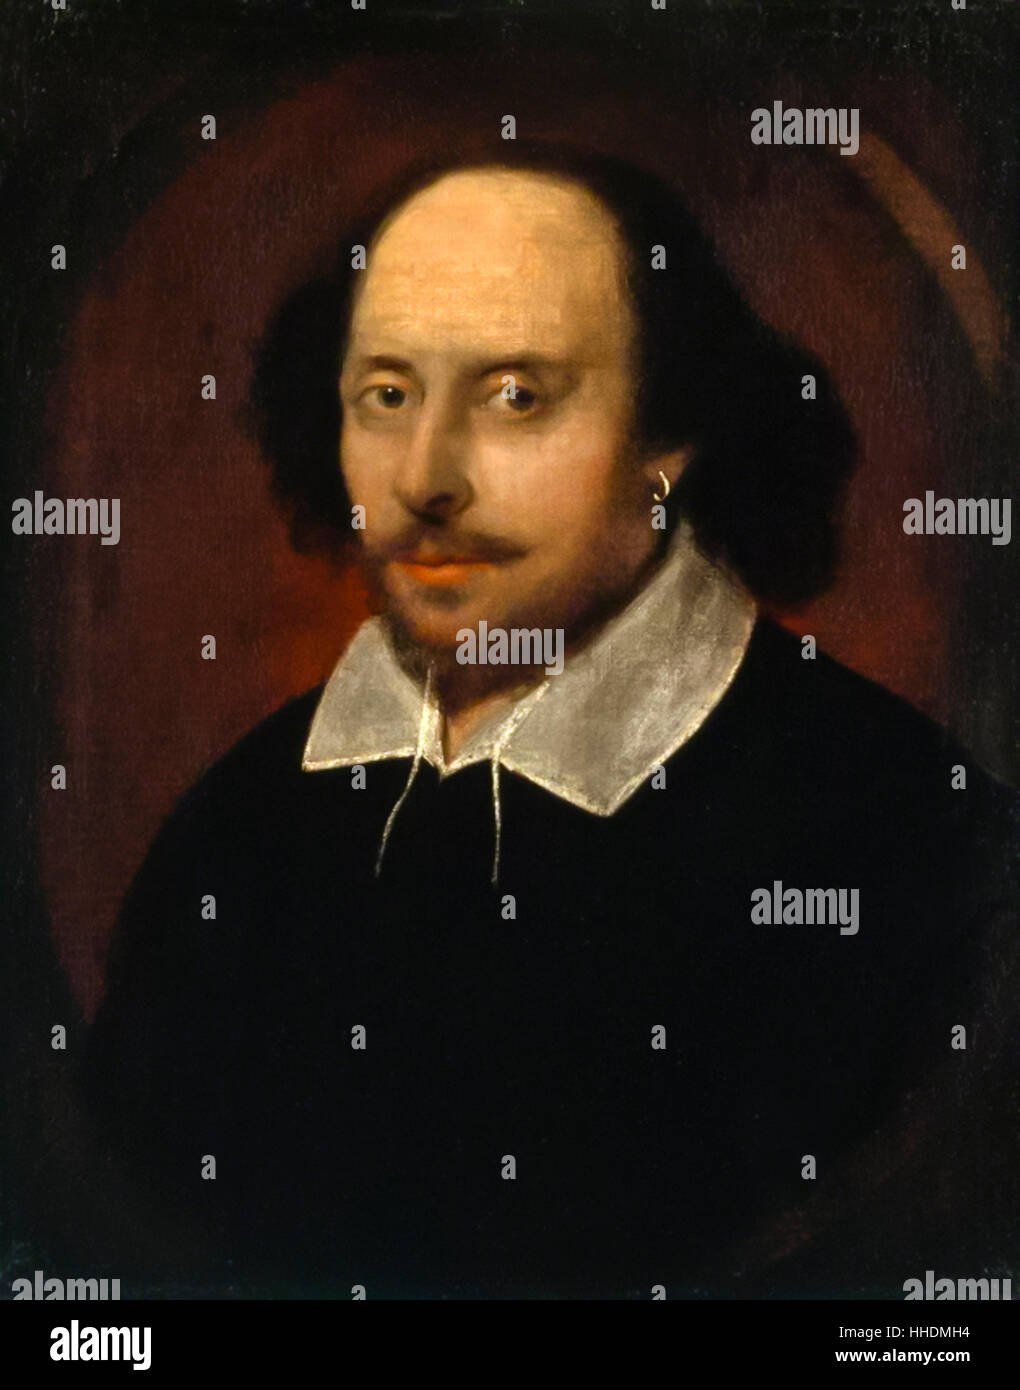 William Shakespeare (1564-1616), peinture à l'huile attribuée à John Taylor (c.1585-1651), peint vers 1610. Banque D'Images